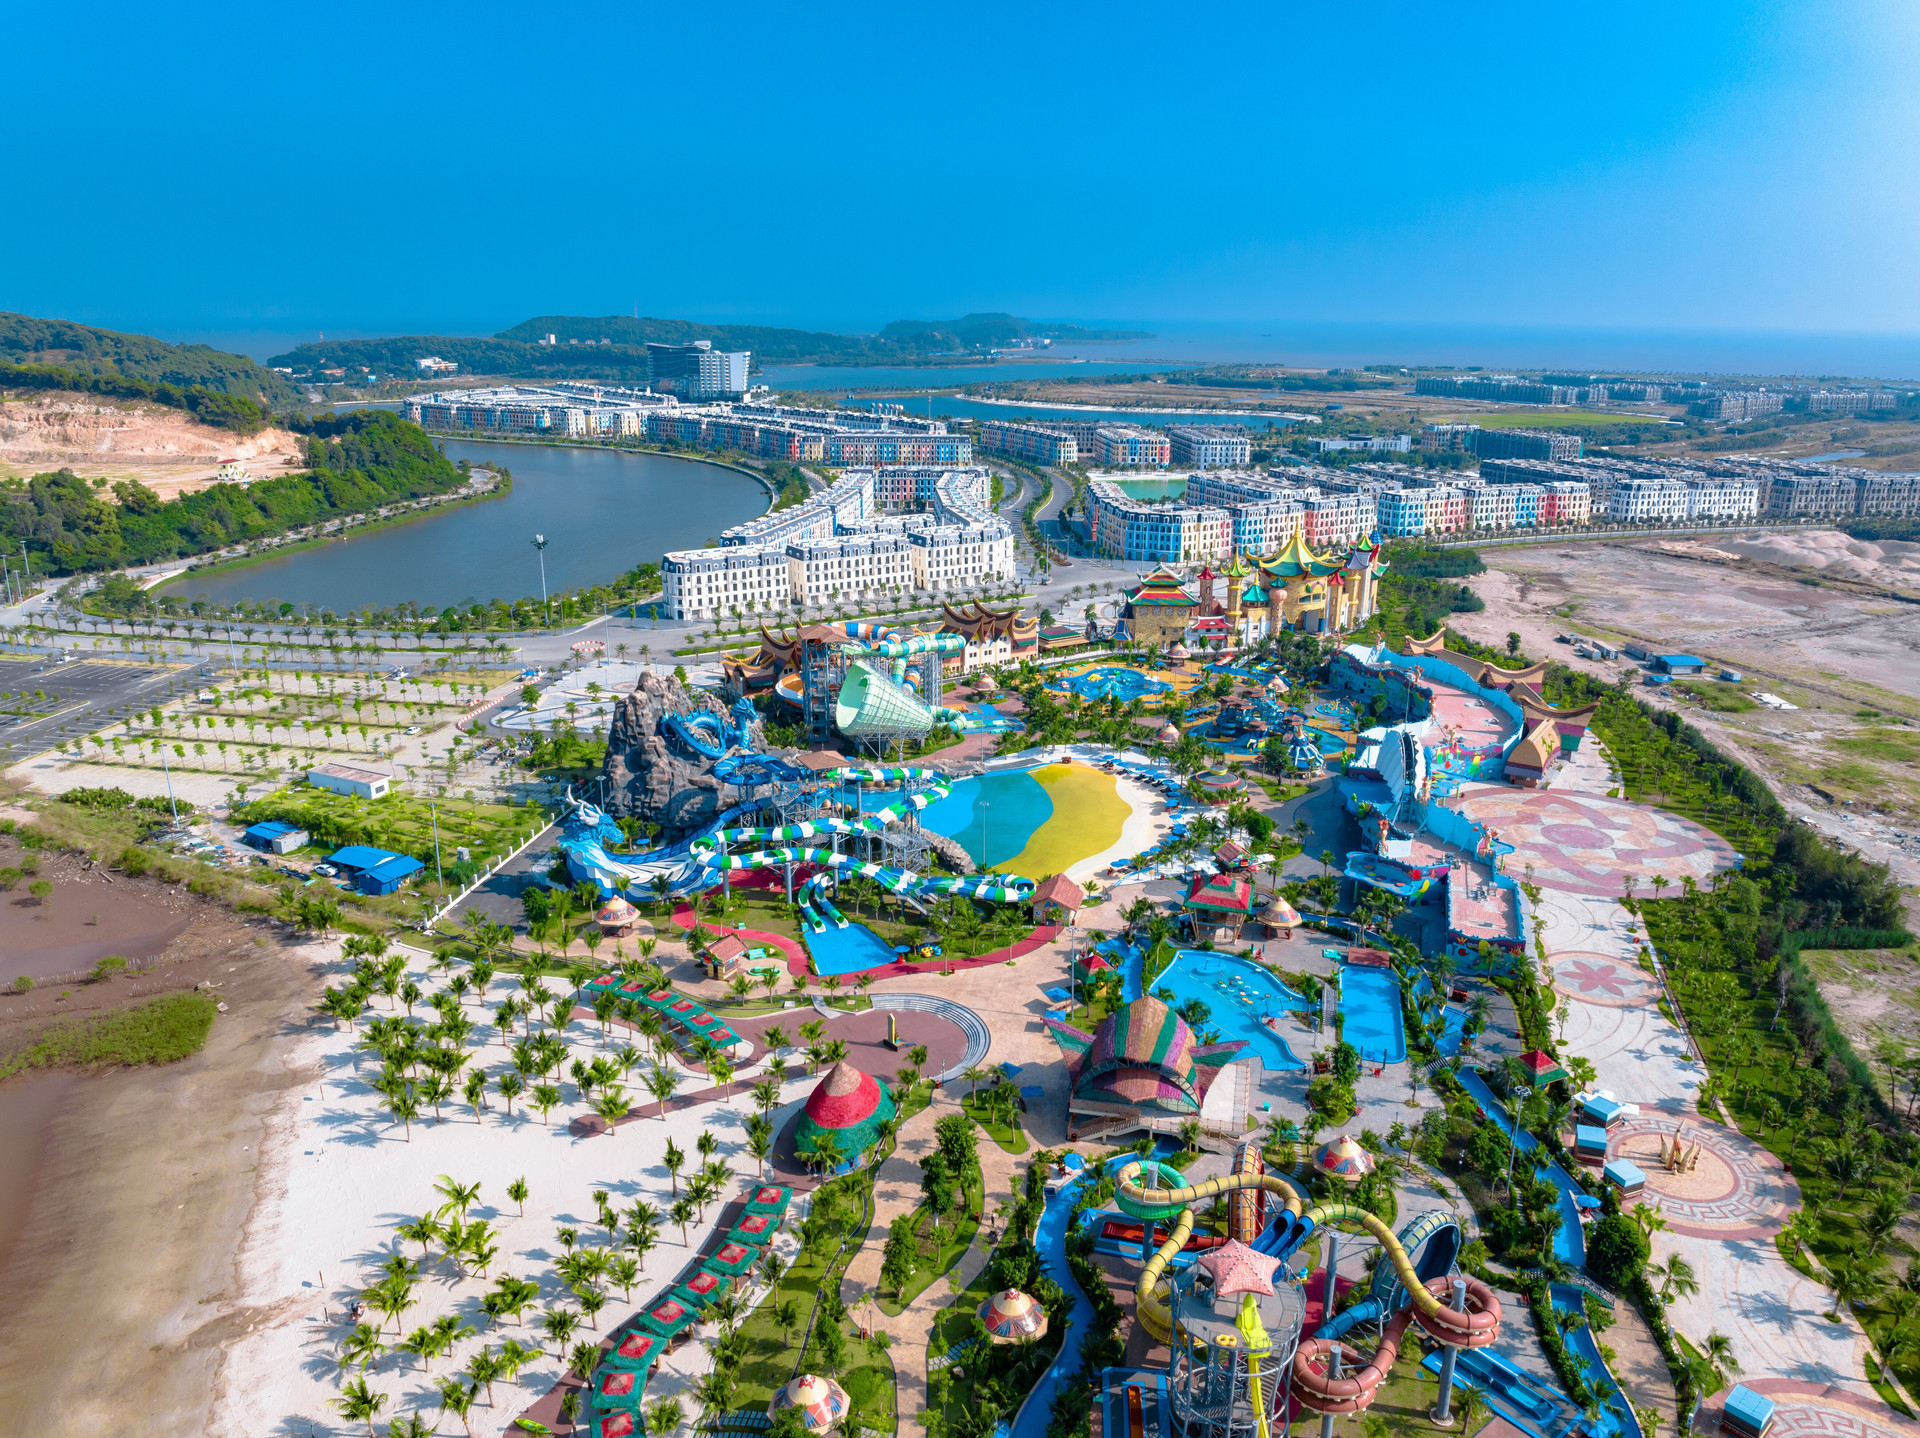 Quần thể du lịch, nghỉ dưỡng, thể thao và vui chơi giải trí hoàn toàn trên biển - Dragon Ocean Đồ Sơn.